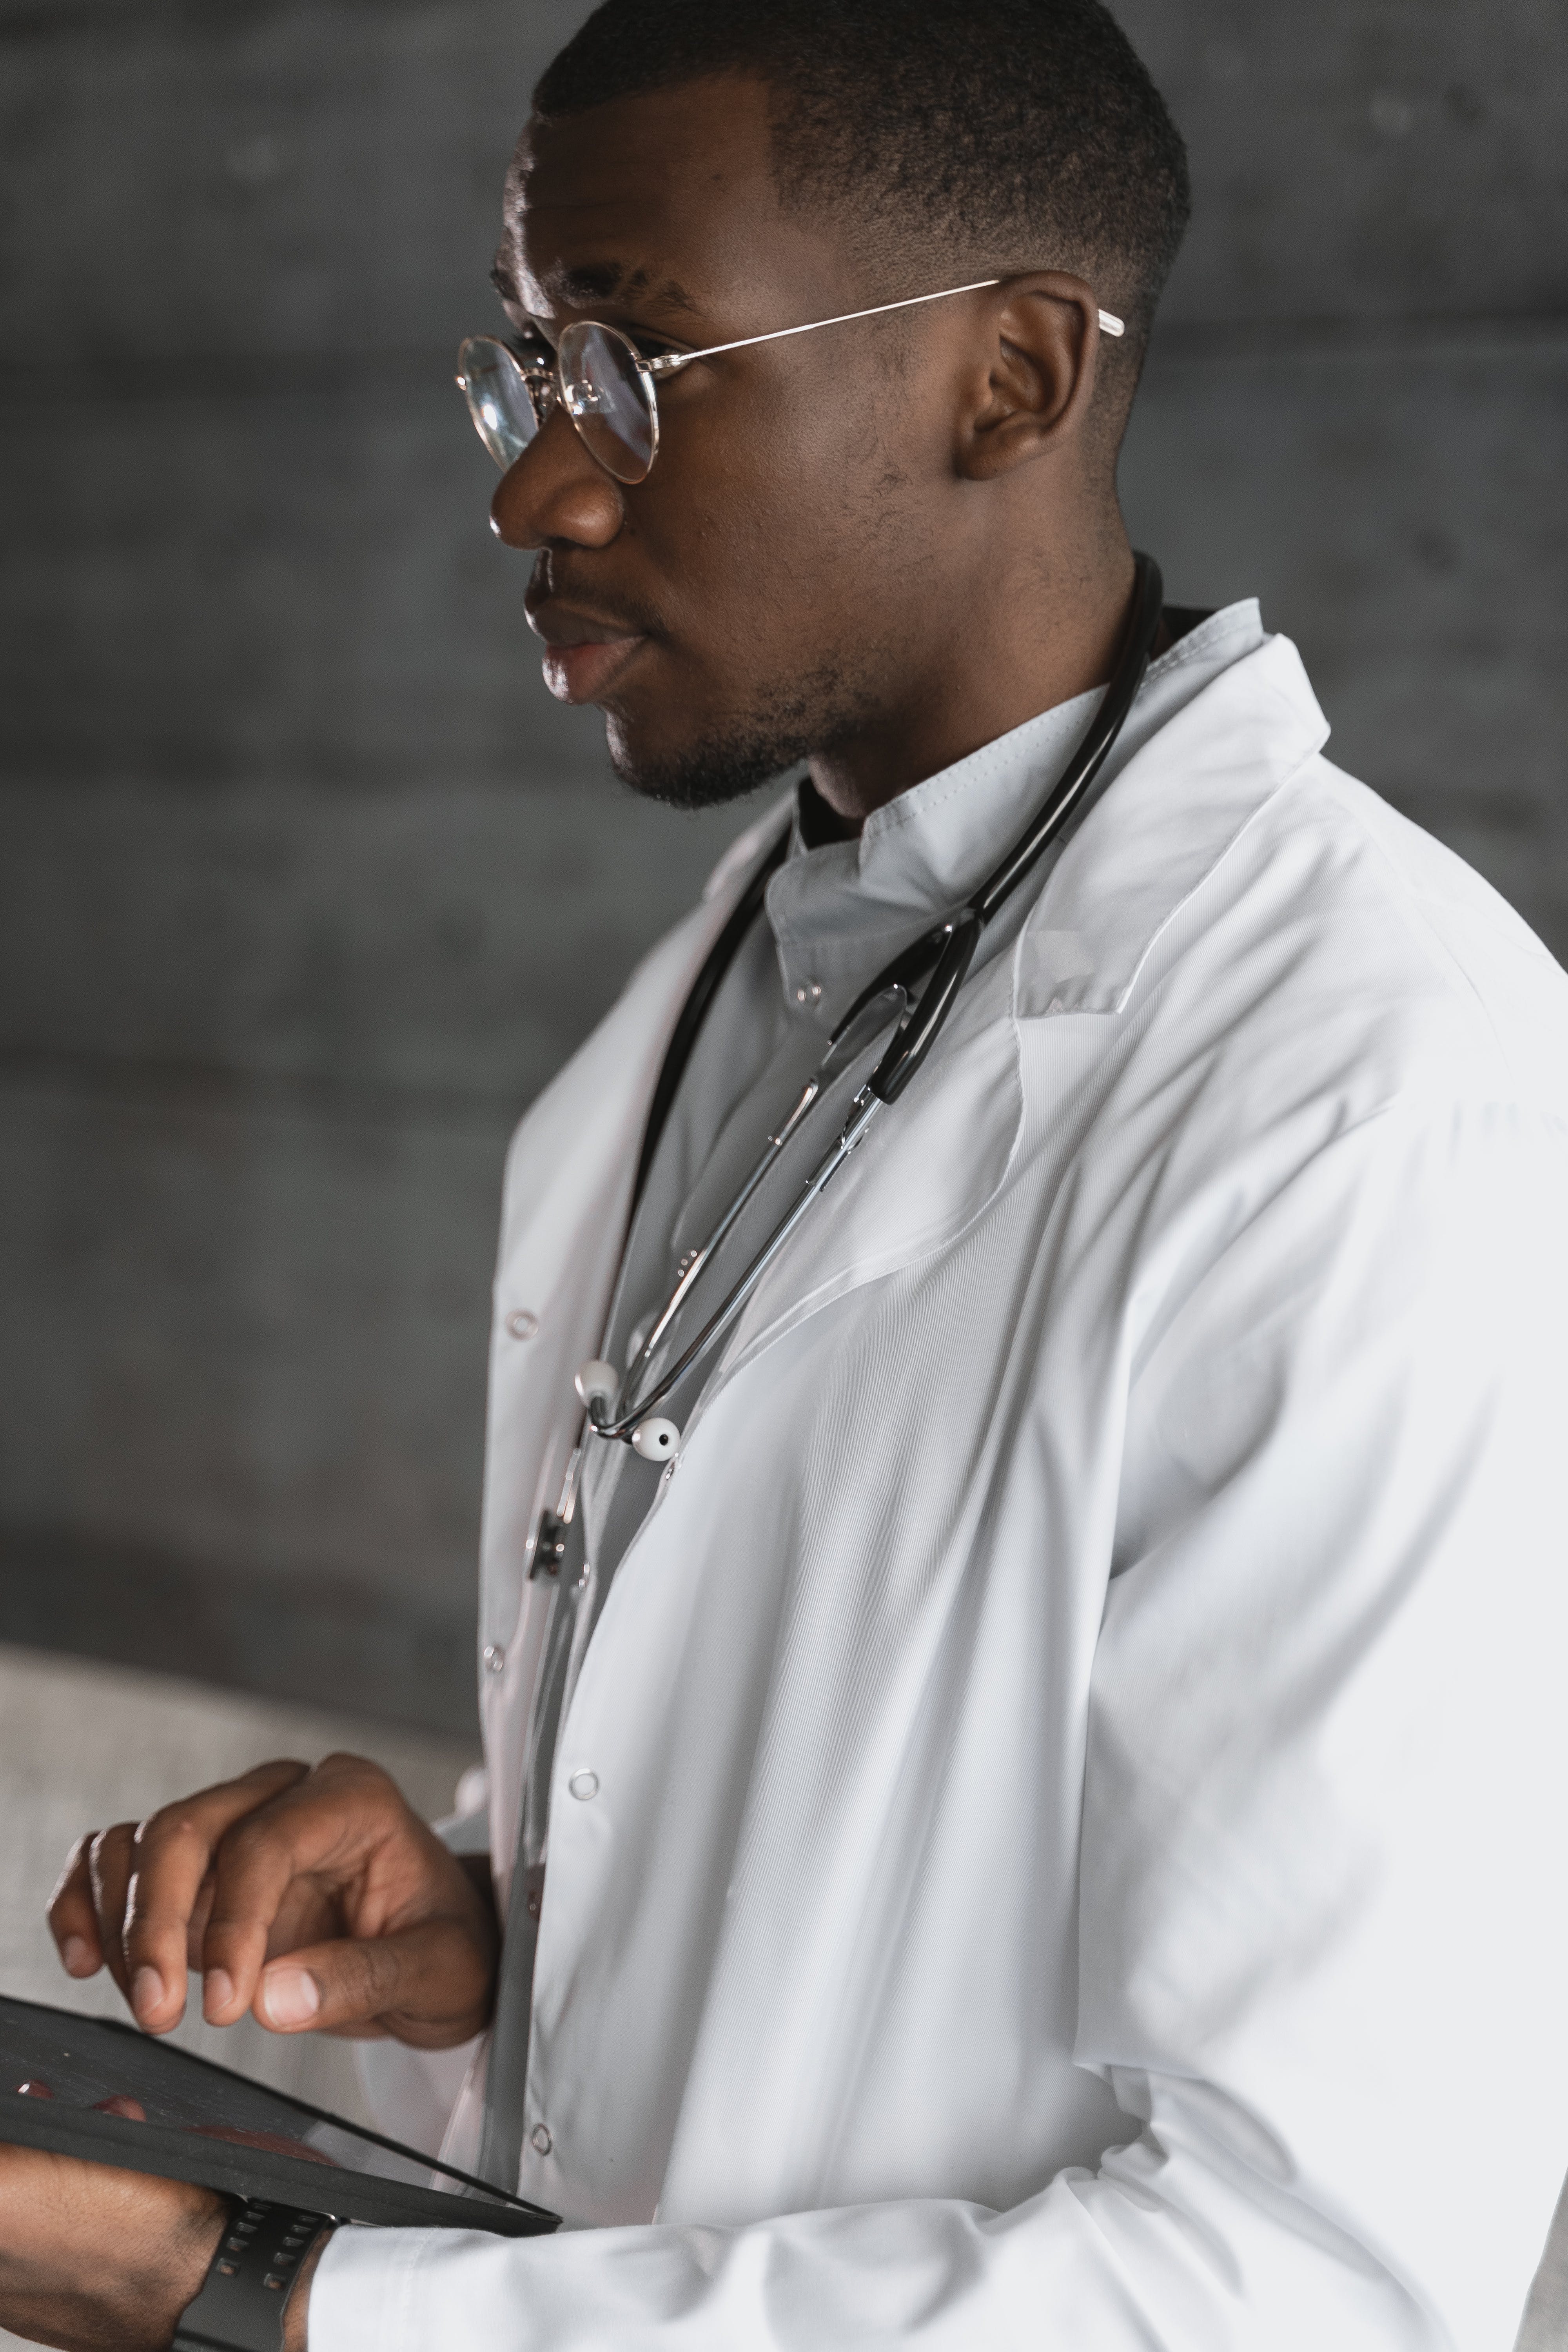 Un médico varón. | Fuente: Pexels